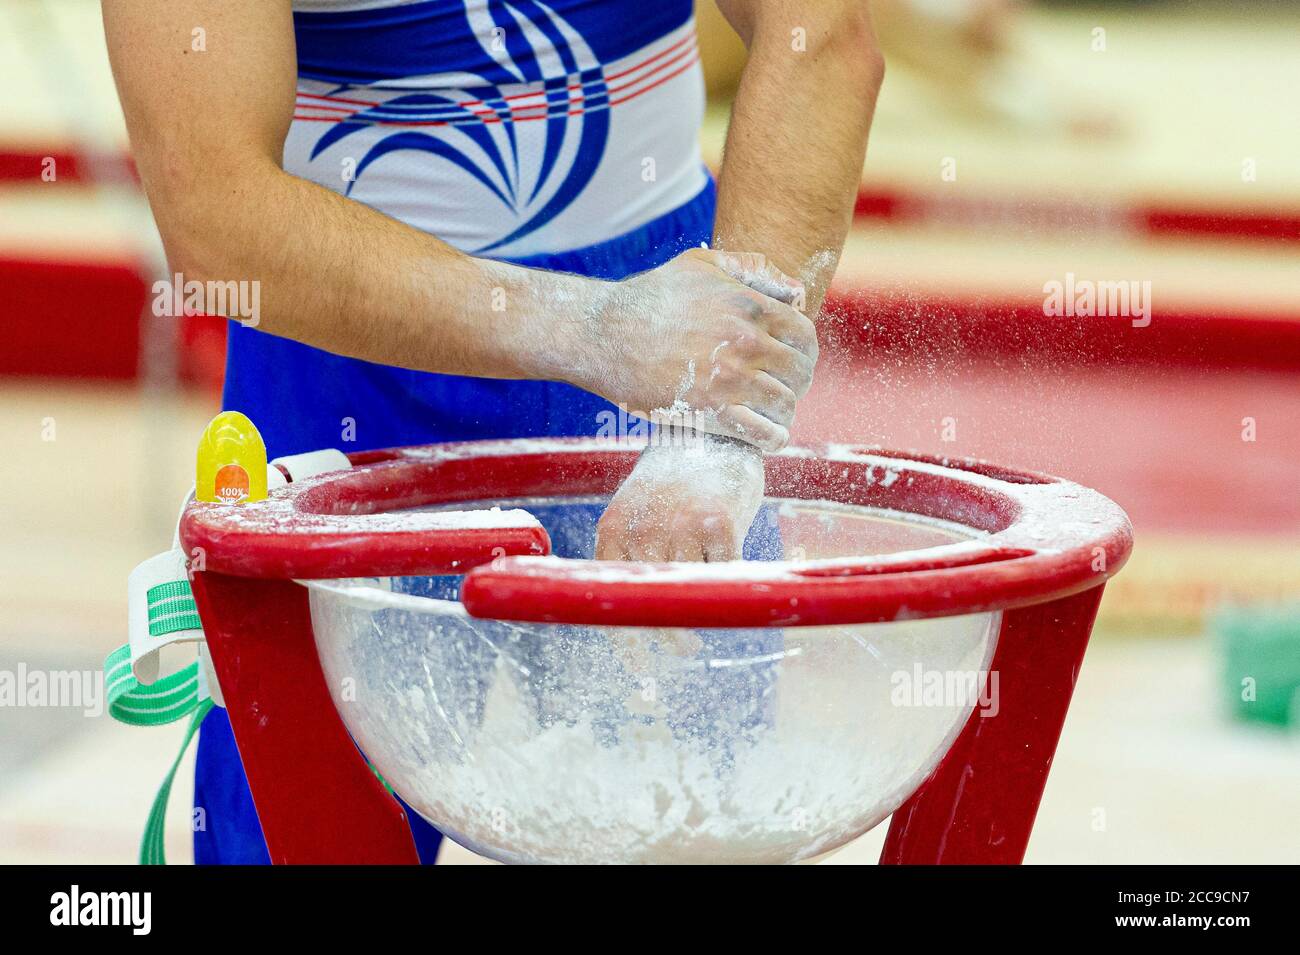 Ginnastica della nazionale francese utilizzando gesso per asciugare Le mani durante un evento di ginnastica artistica maschile Foto Stock